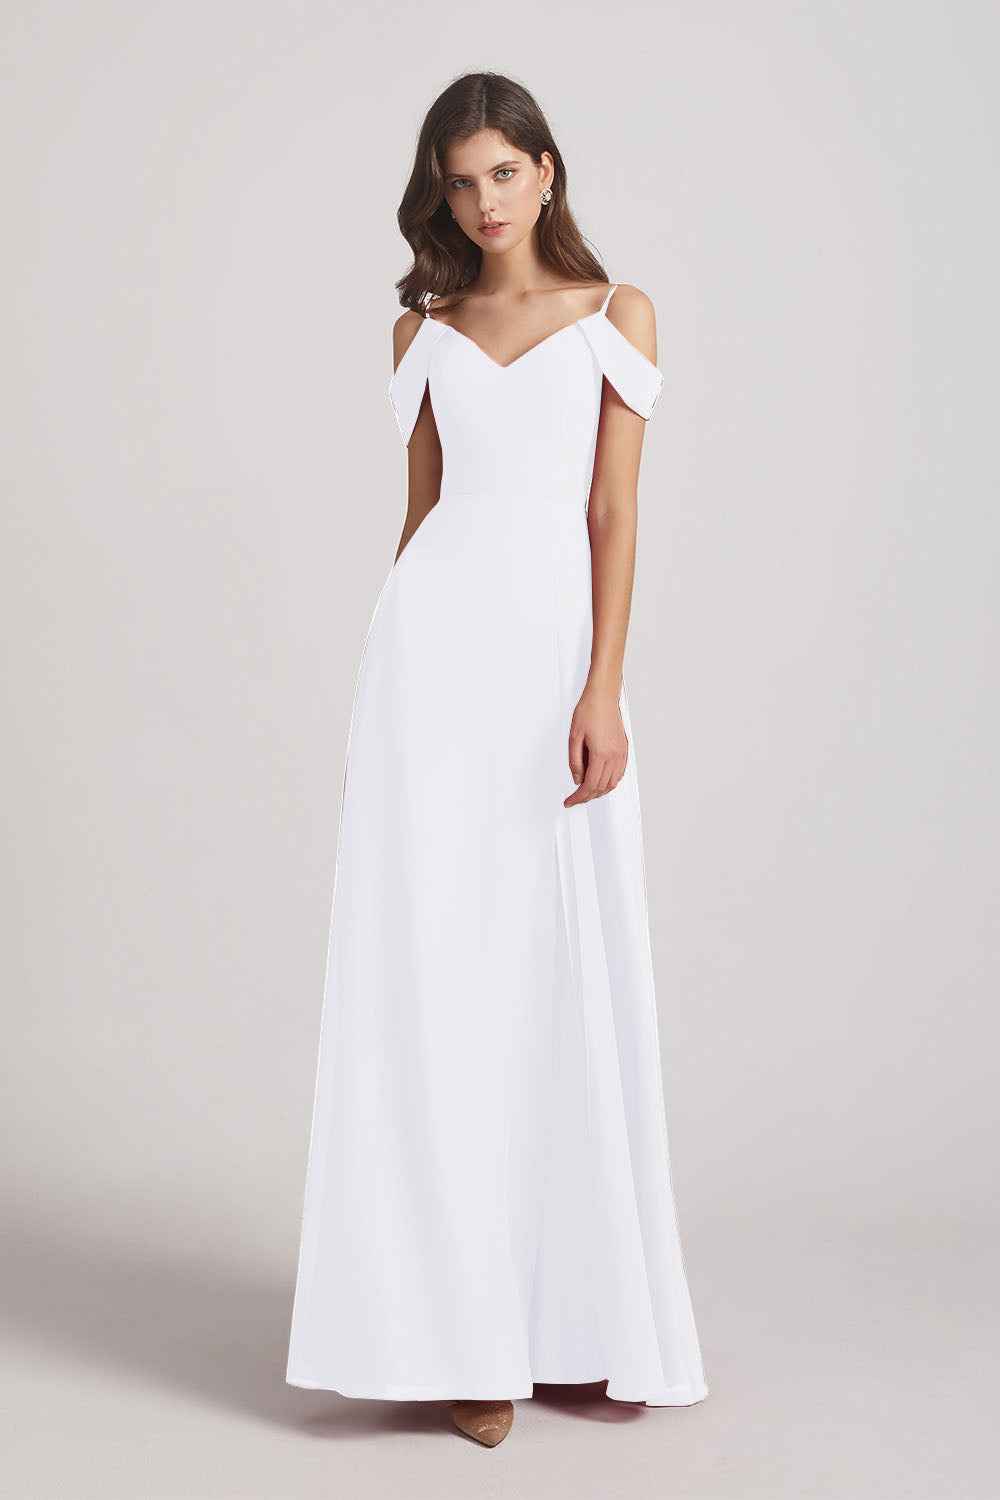 Alfa Bridal White Chiffon Cold Shoulder V-Neck Bridesmaid Dresses with Slit (AF0093)